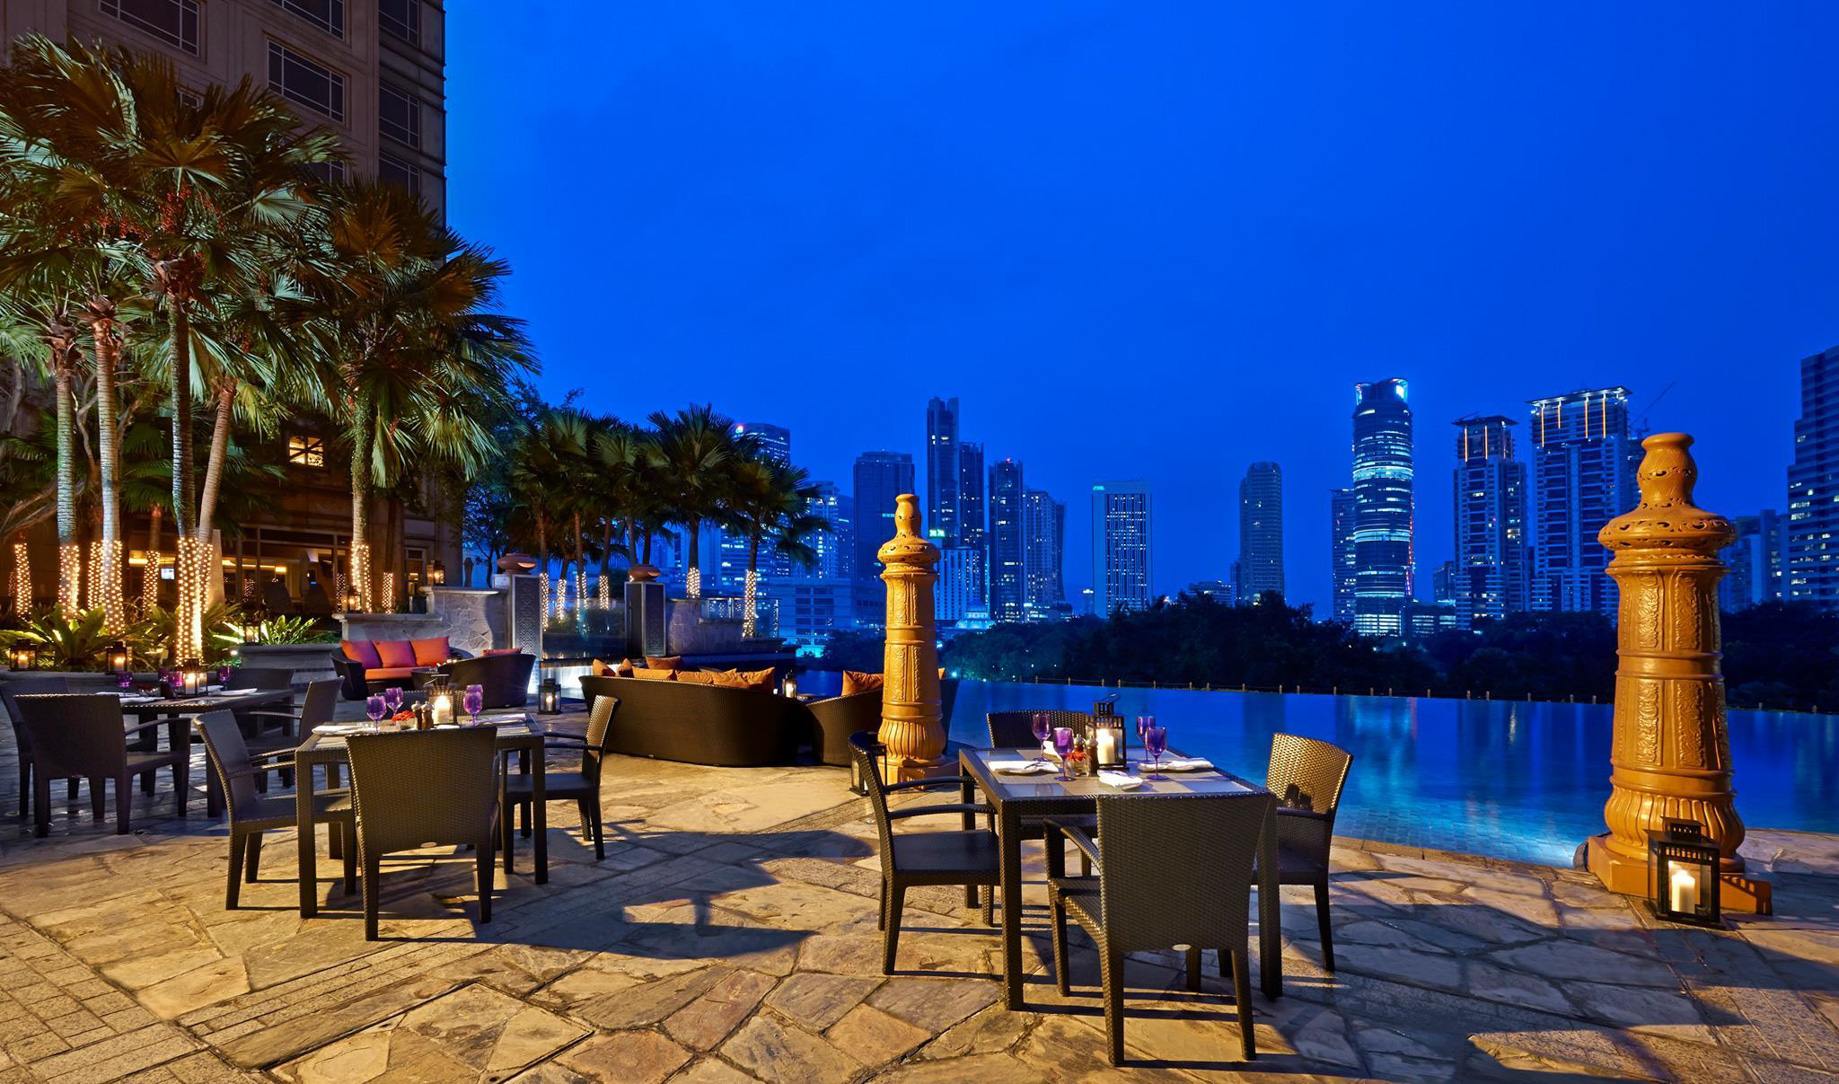 Mandarin Oriental, Kuala Lumpur Hotel – Kuala Lumpur, Indonesia – Outdoor Pool Deck Night View